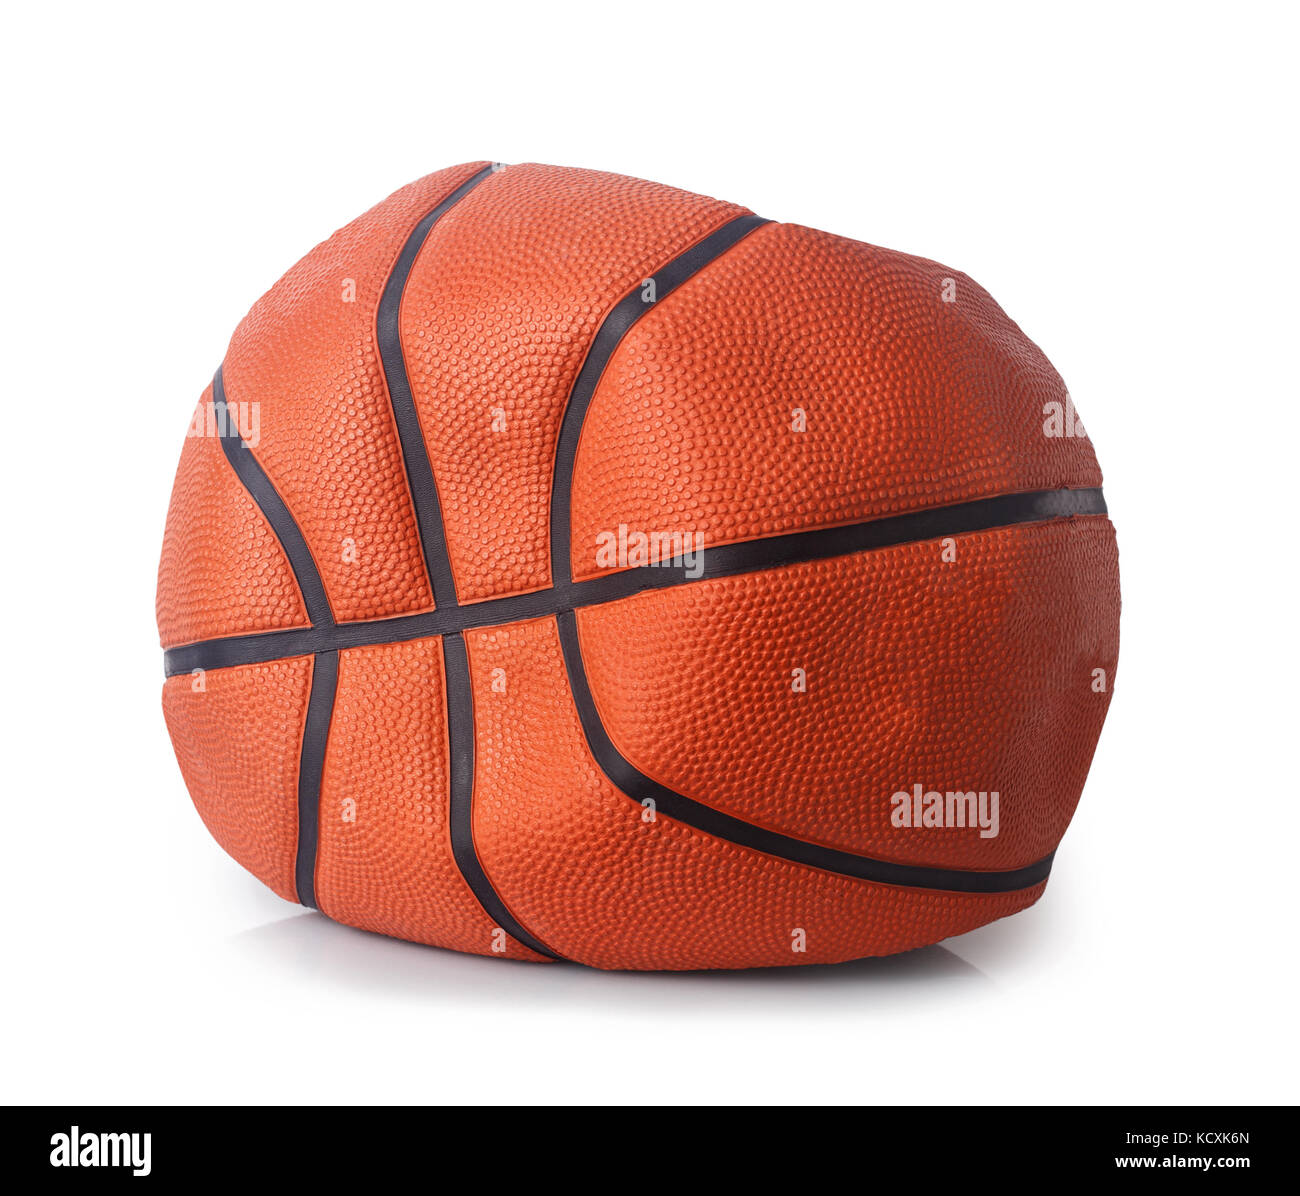 deflated basketball ball Stock Photo